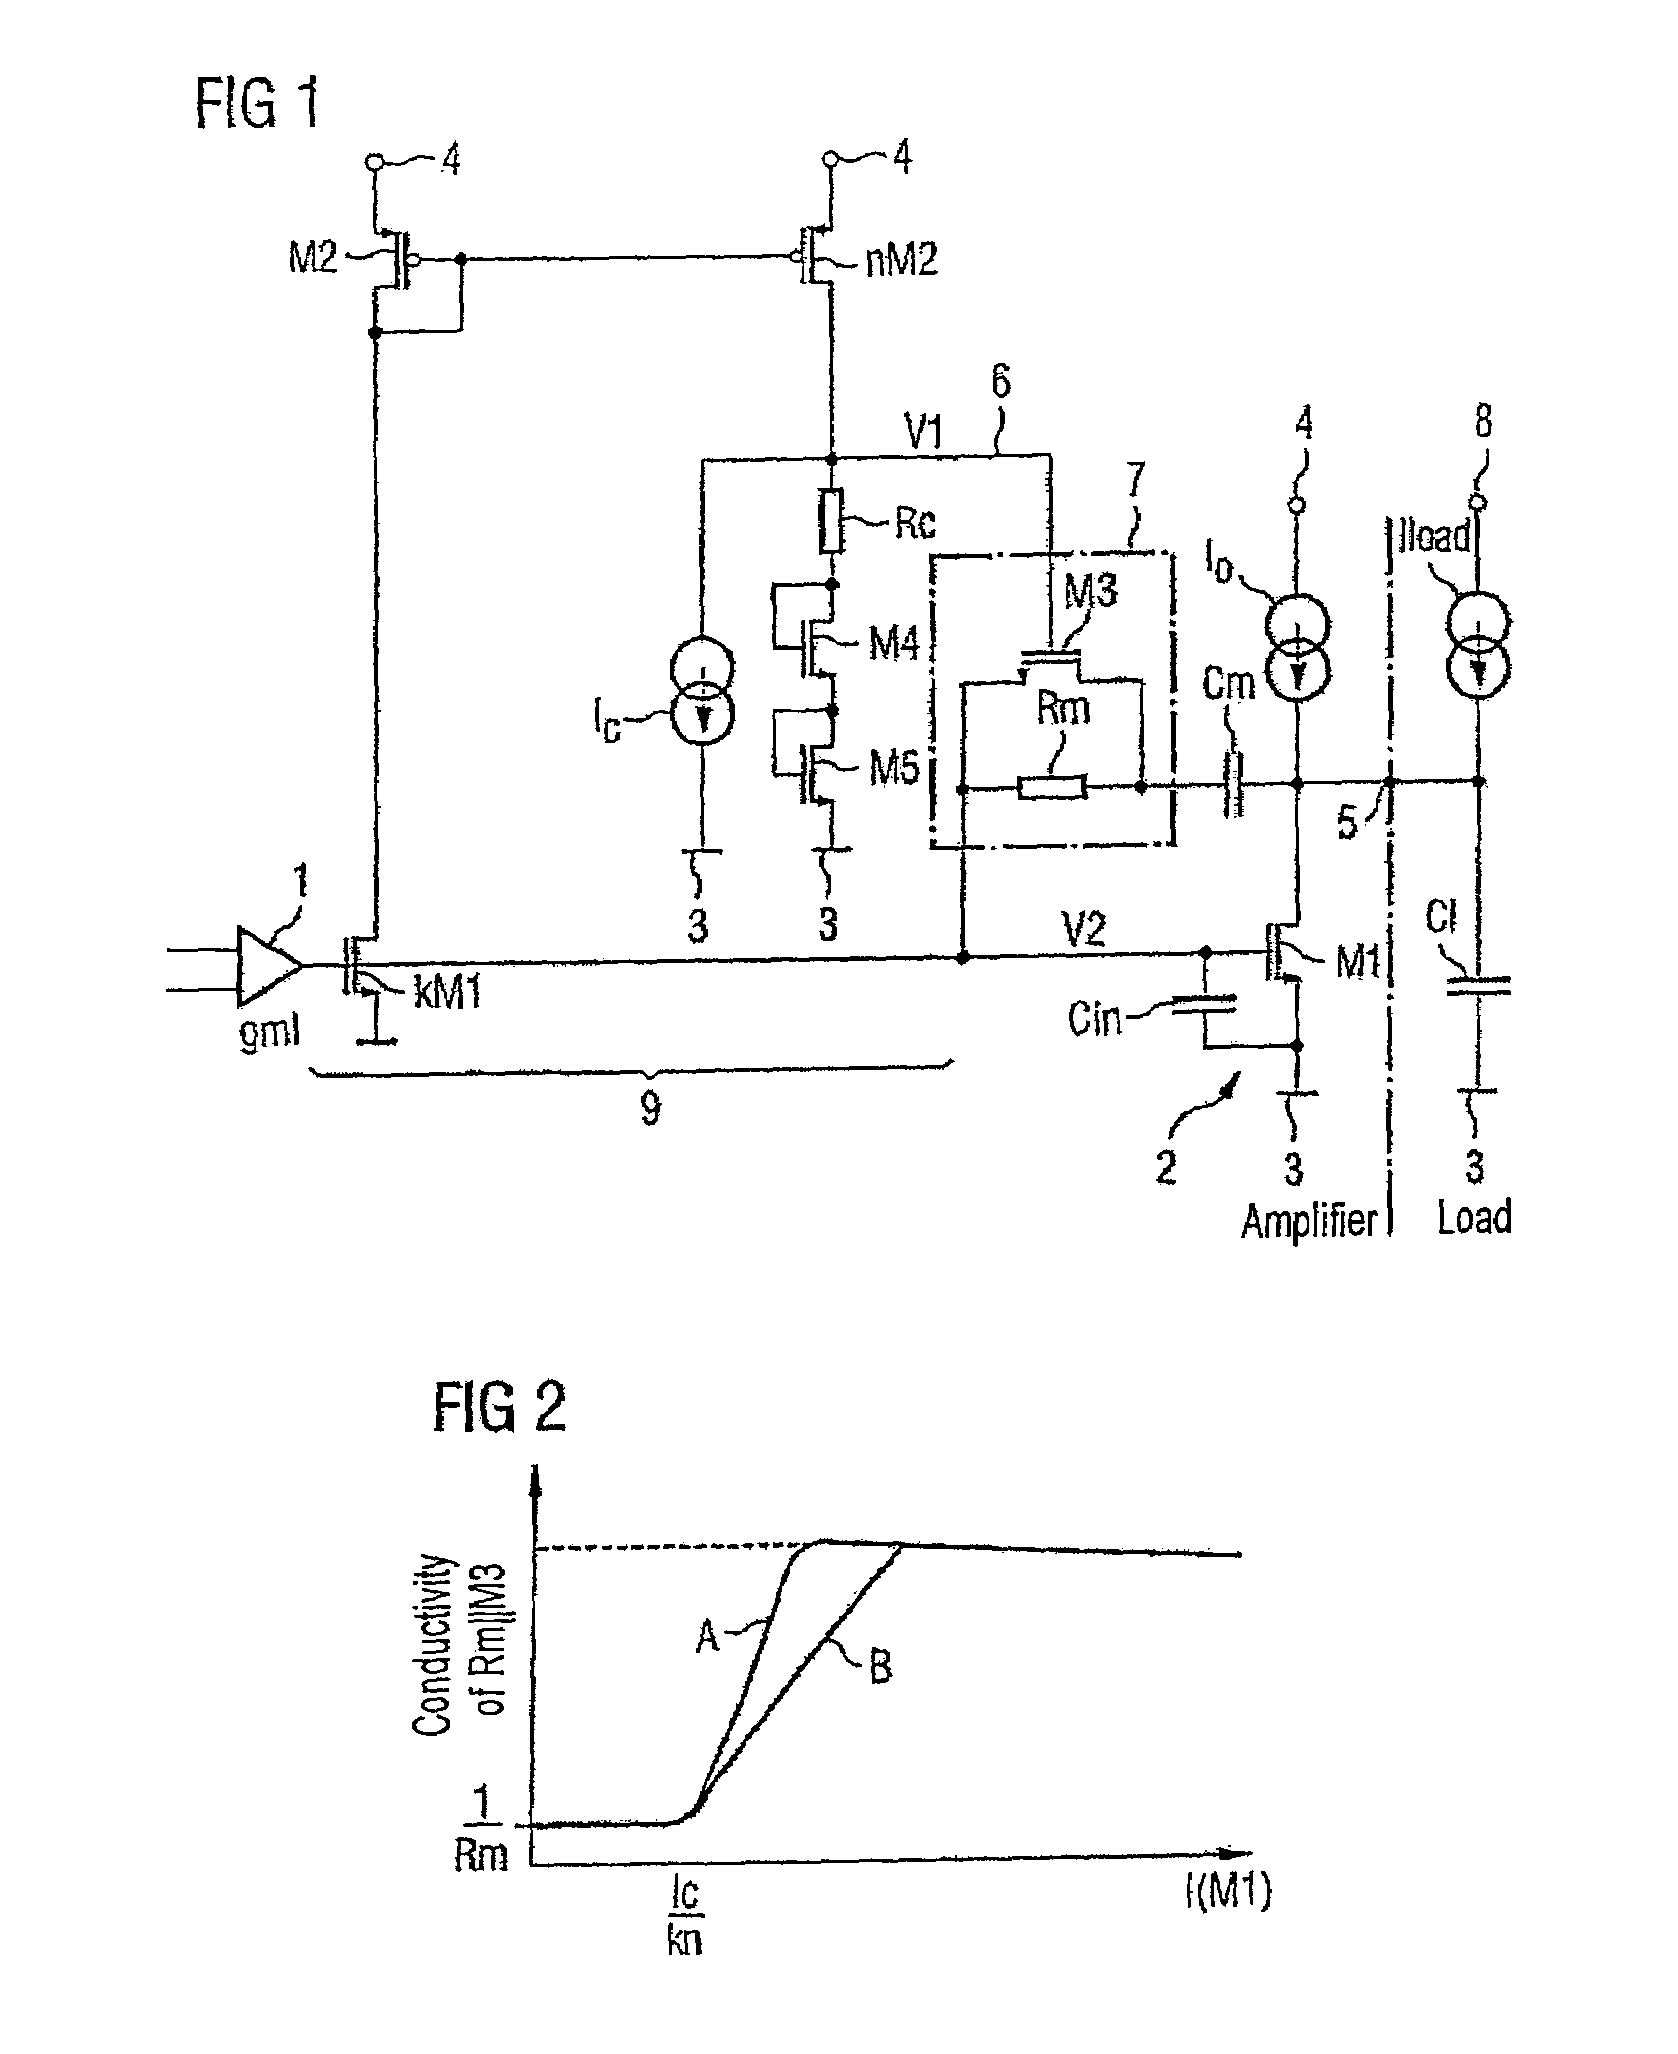 Amplifier arrangement